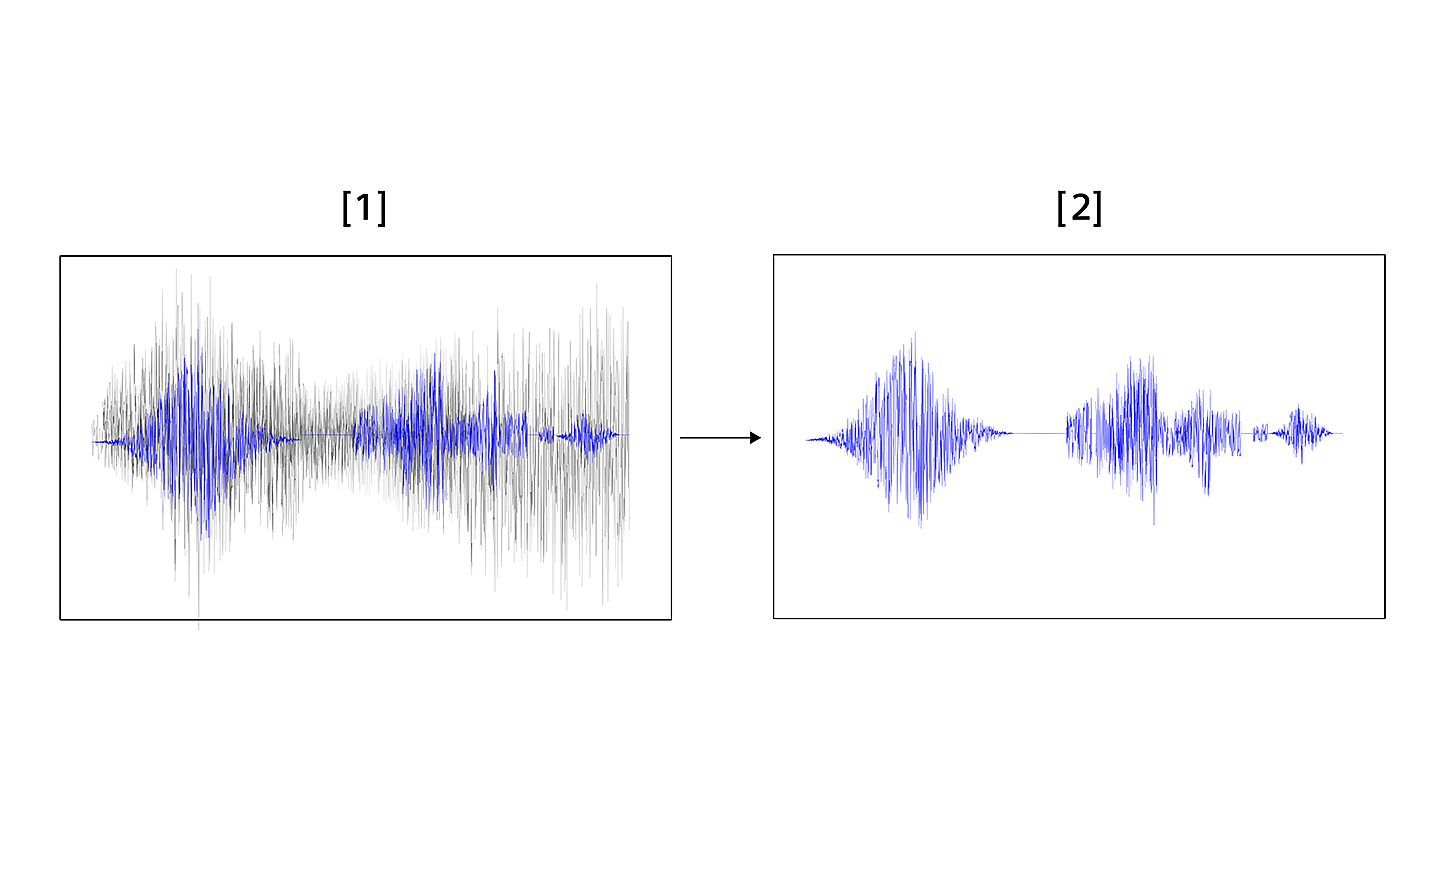 Comparație a nivelurilor de zgomot produs de vânt cu funcția de filtrare inteligentă a zgomotului produs de vânt activată și dezactivată